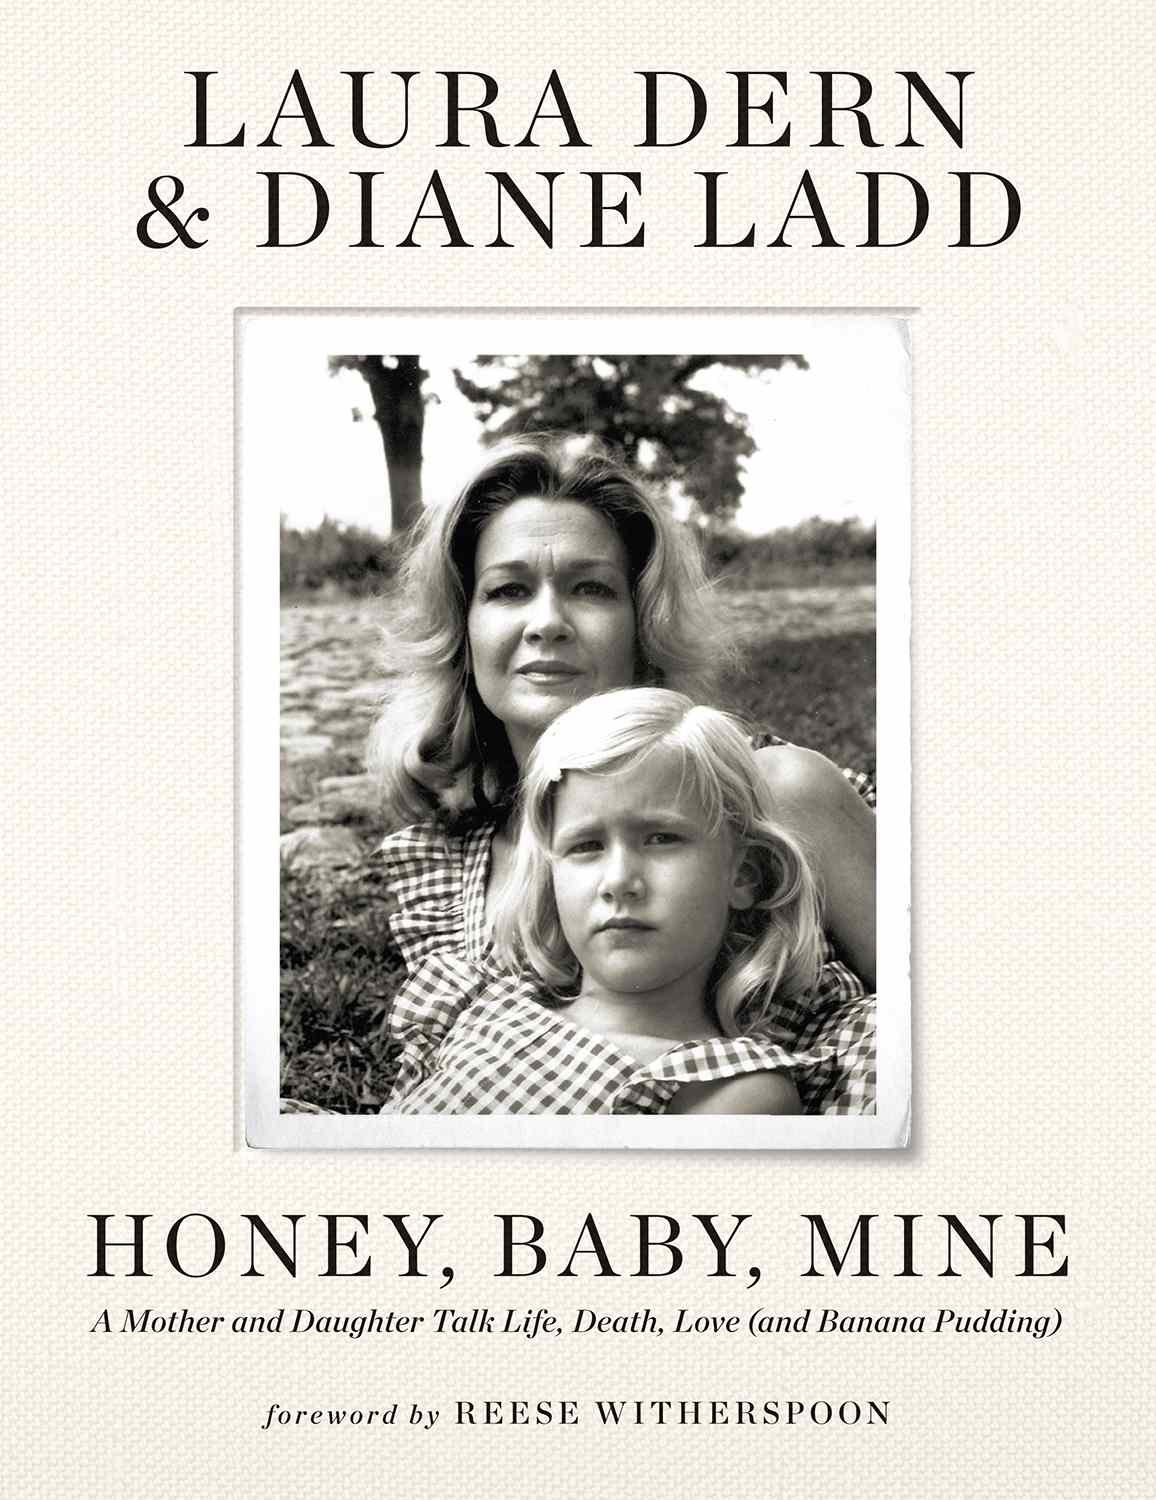 Laura Dern et sa mère Diane Ladd dévoilent la couverture du nouveau livre "Honey, Baby, Mine"